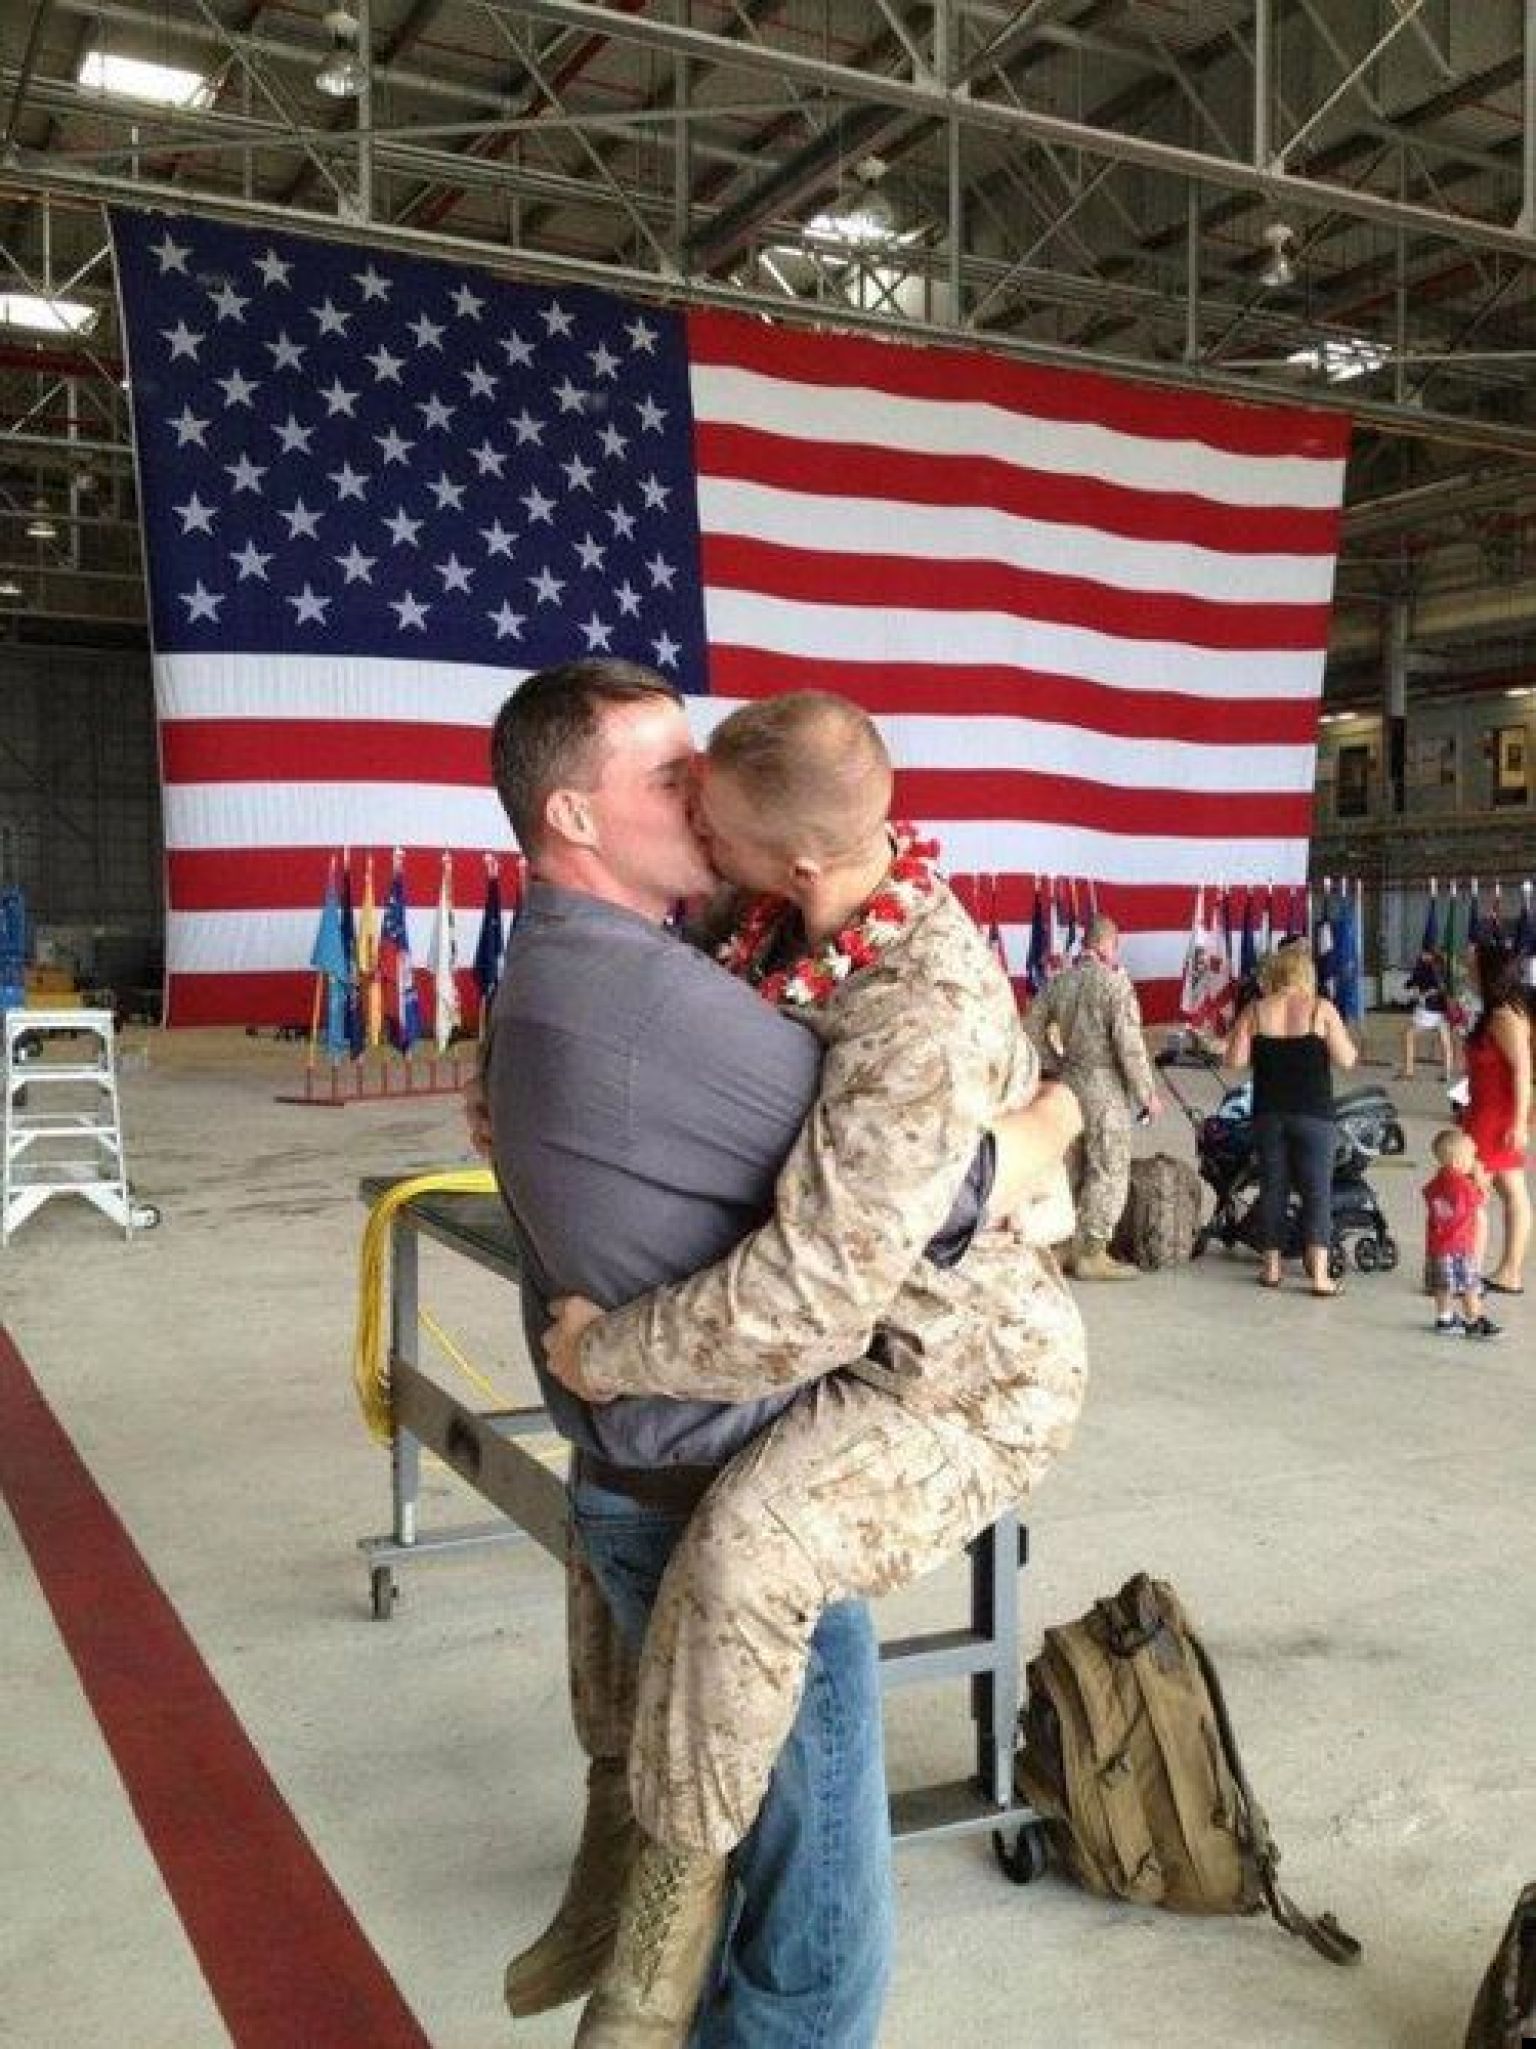 Brandon Morgan Gay U S Marine In Viral Kissing Photograph Gets